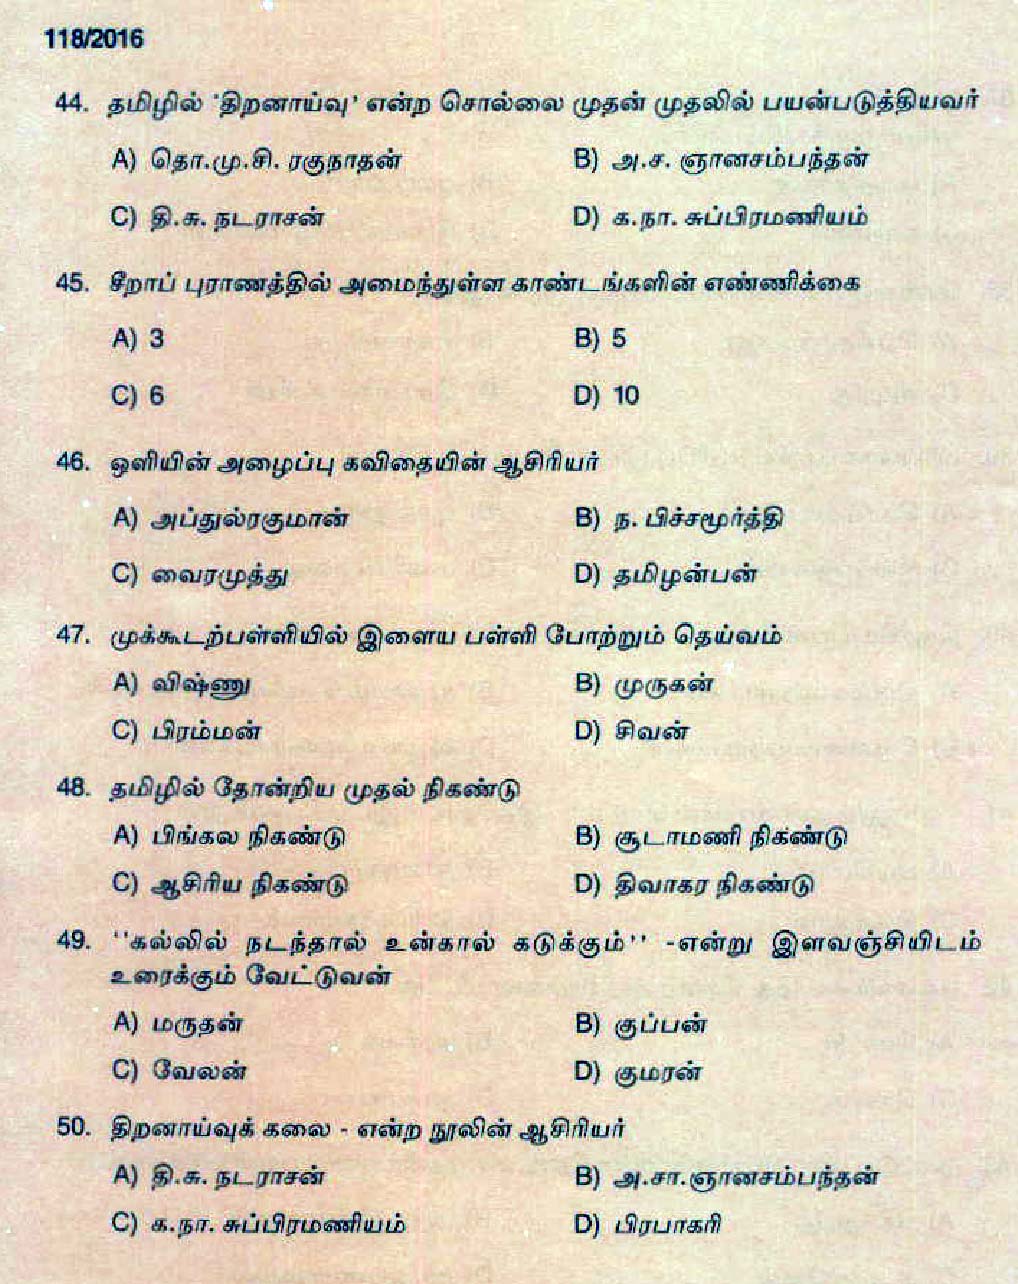 Kerala PSC High School Assistant Tamil Question Code 1182016 6